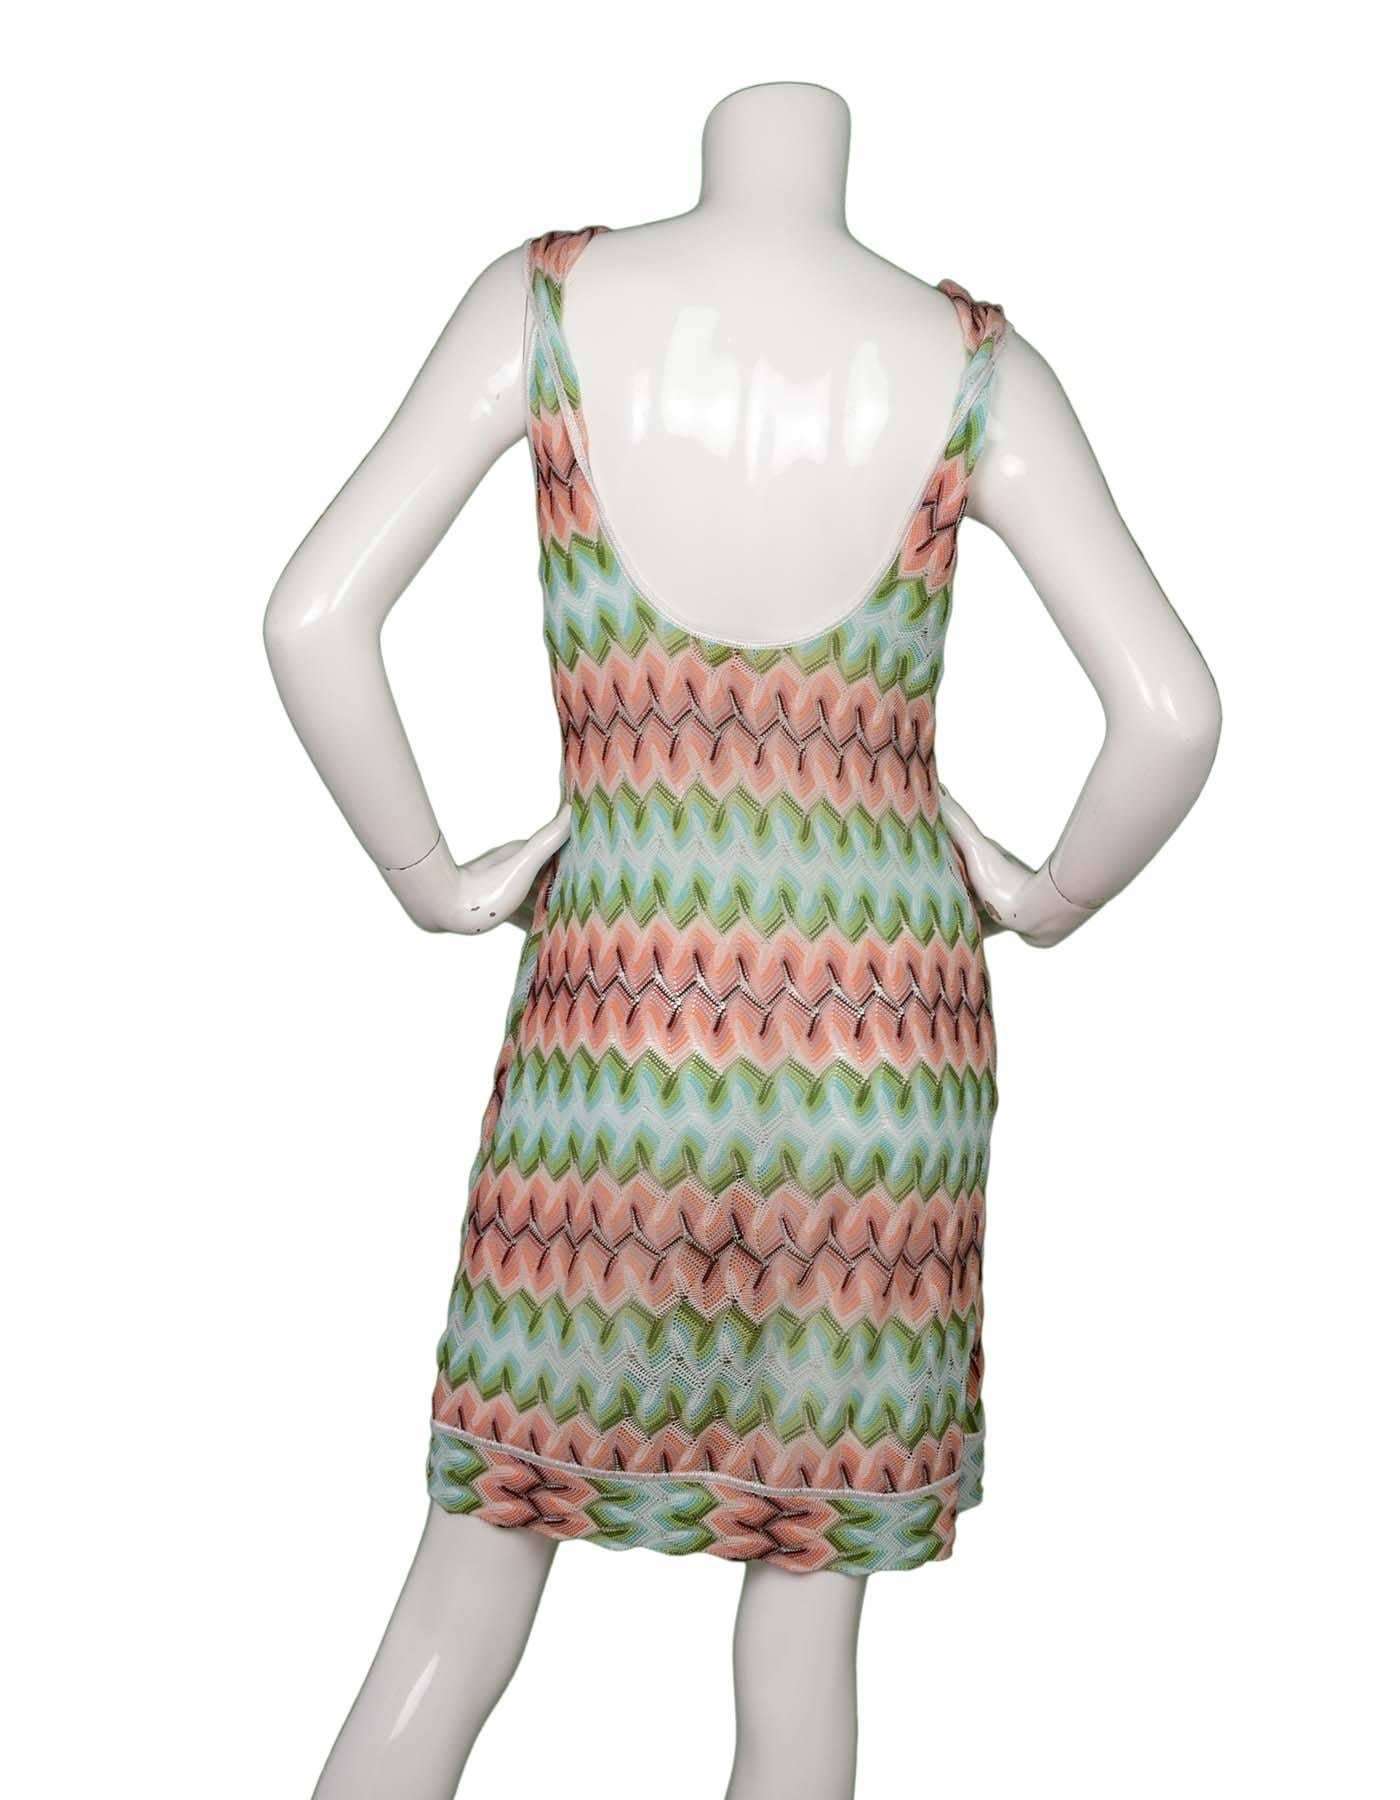 Brown Missoni Peach & Teal Knit Sleeveless Dress sz 44